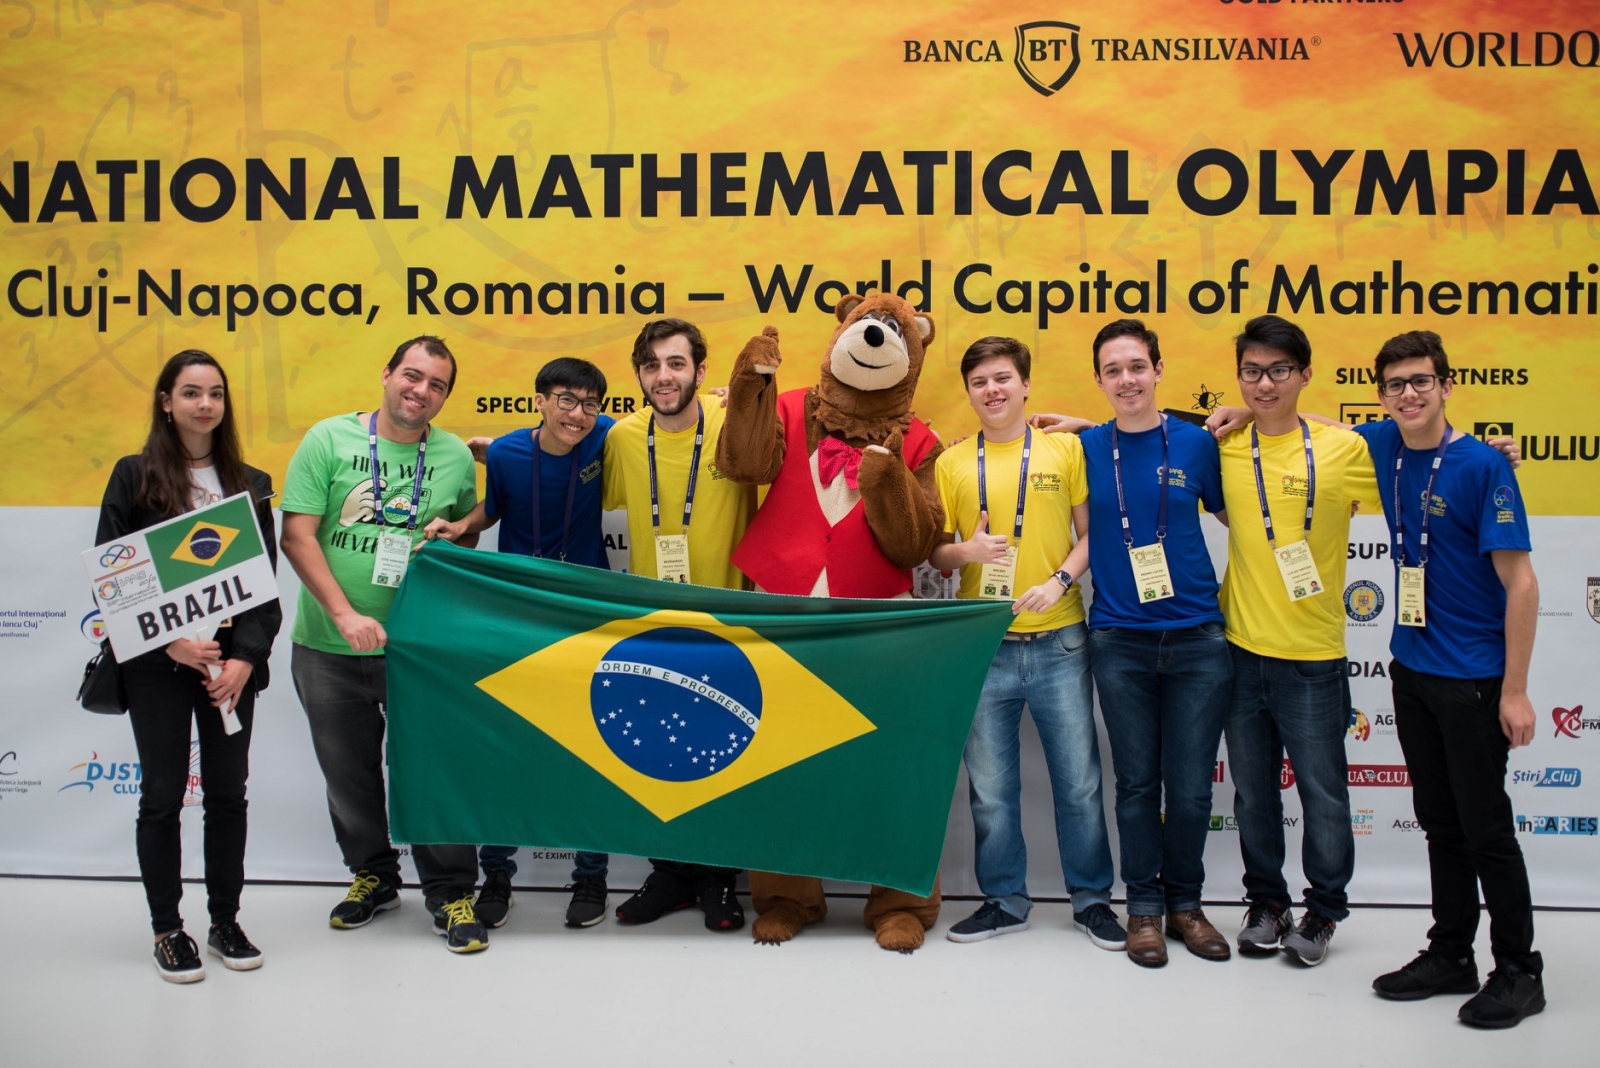 @ Alunos do Colégio Etapa conquistam uma medalha de ouro, duas de bronze e uma menção honrosa na Olimpíada Internacional de Matemática (IMO)